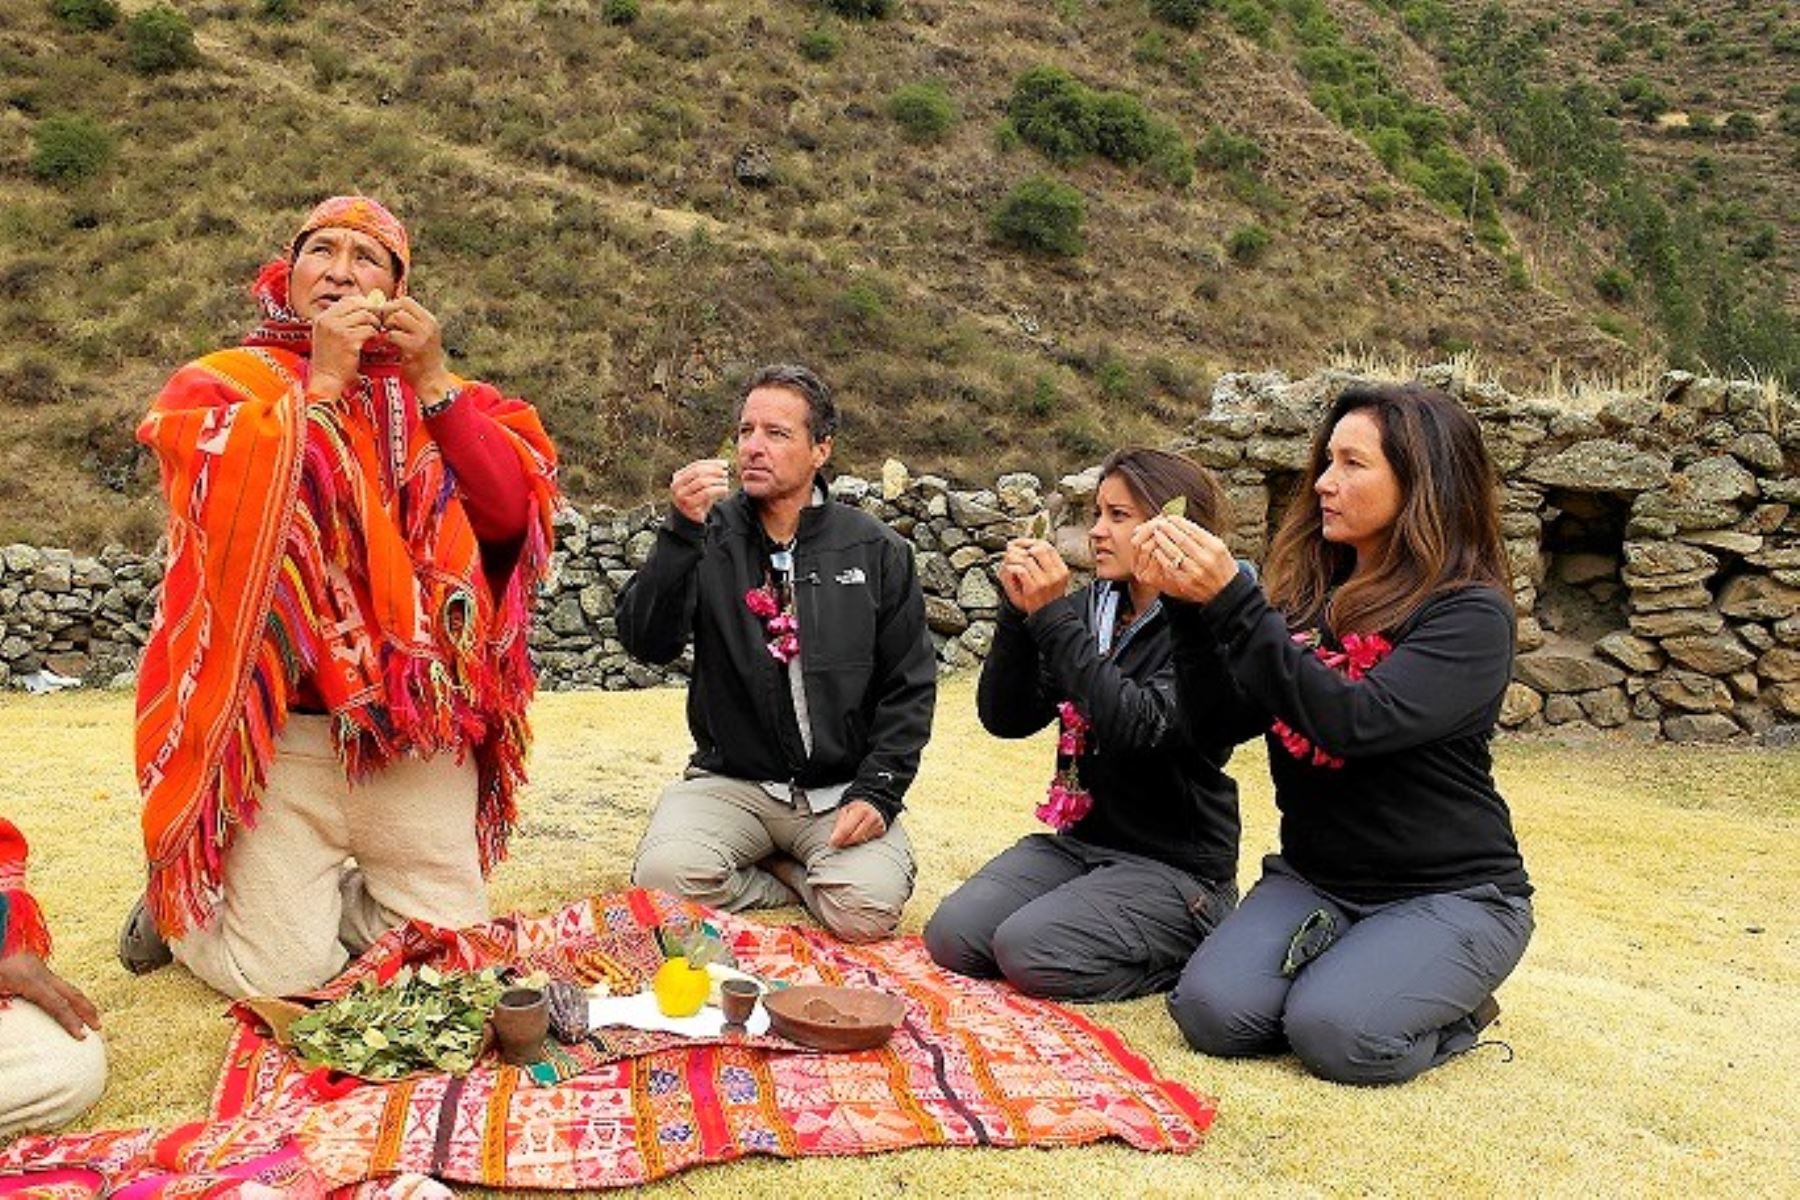 Turismo comunitário: o que é e como é desenvolvido no Peru?